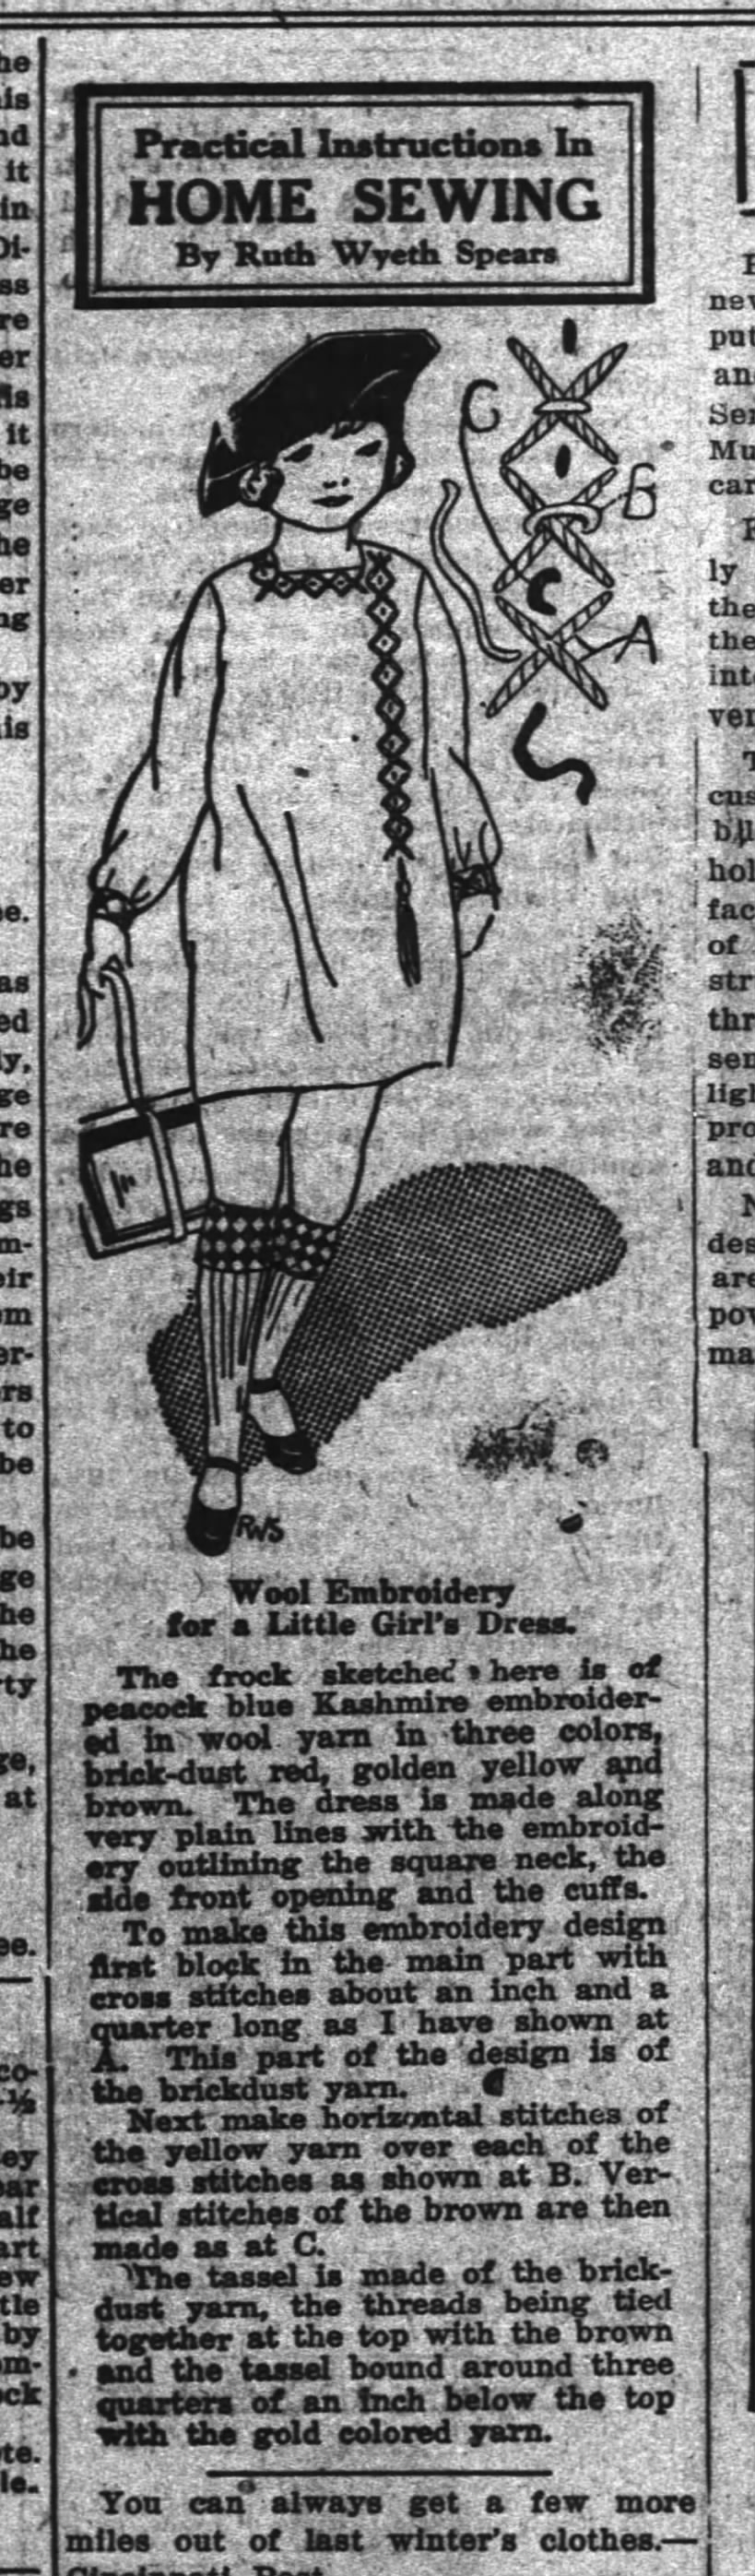 19 nov 1925 rws embroidery